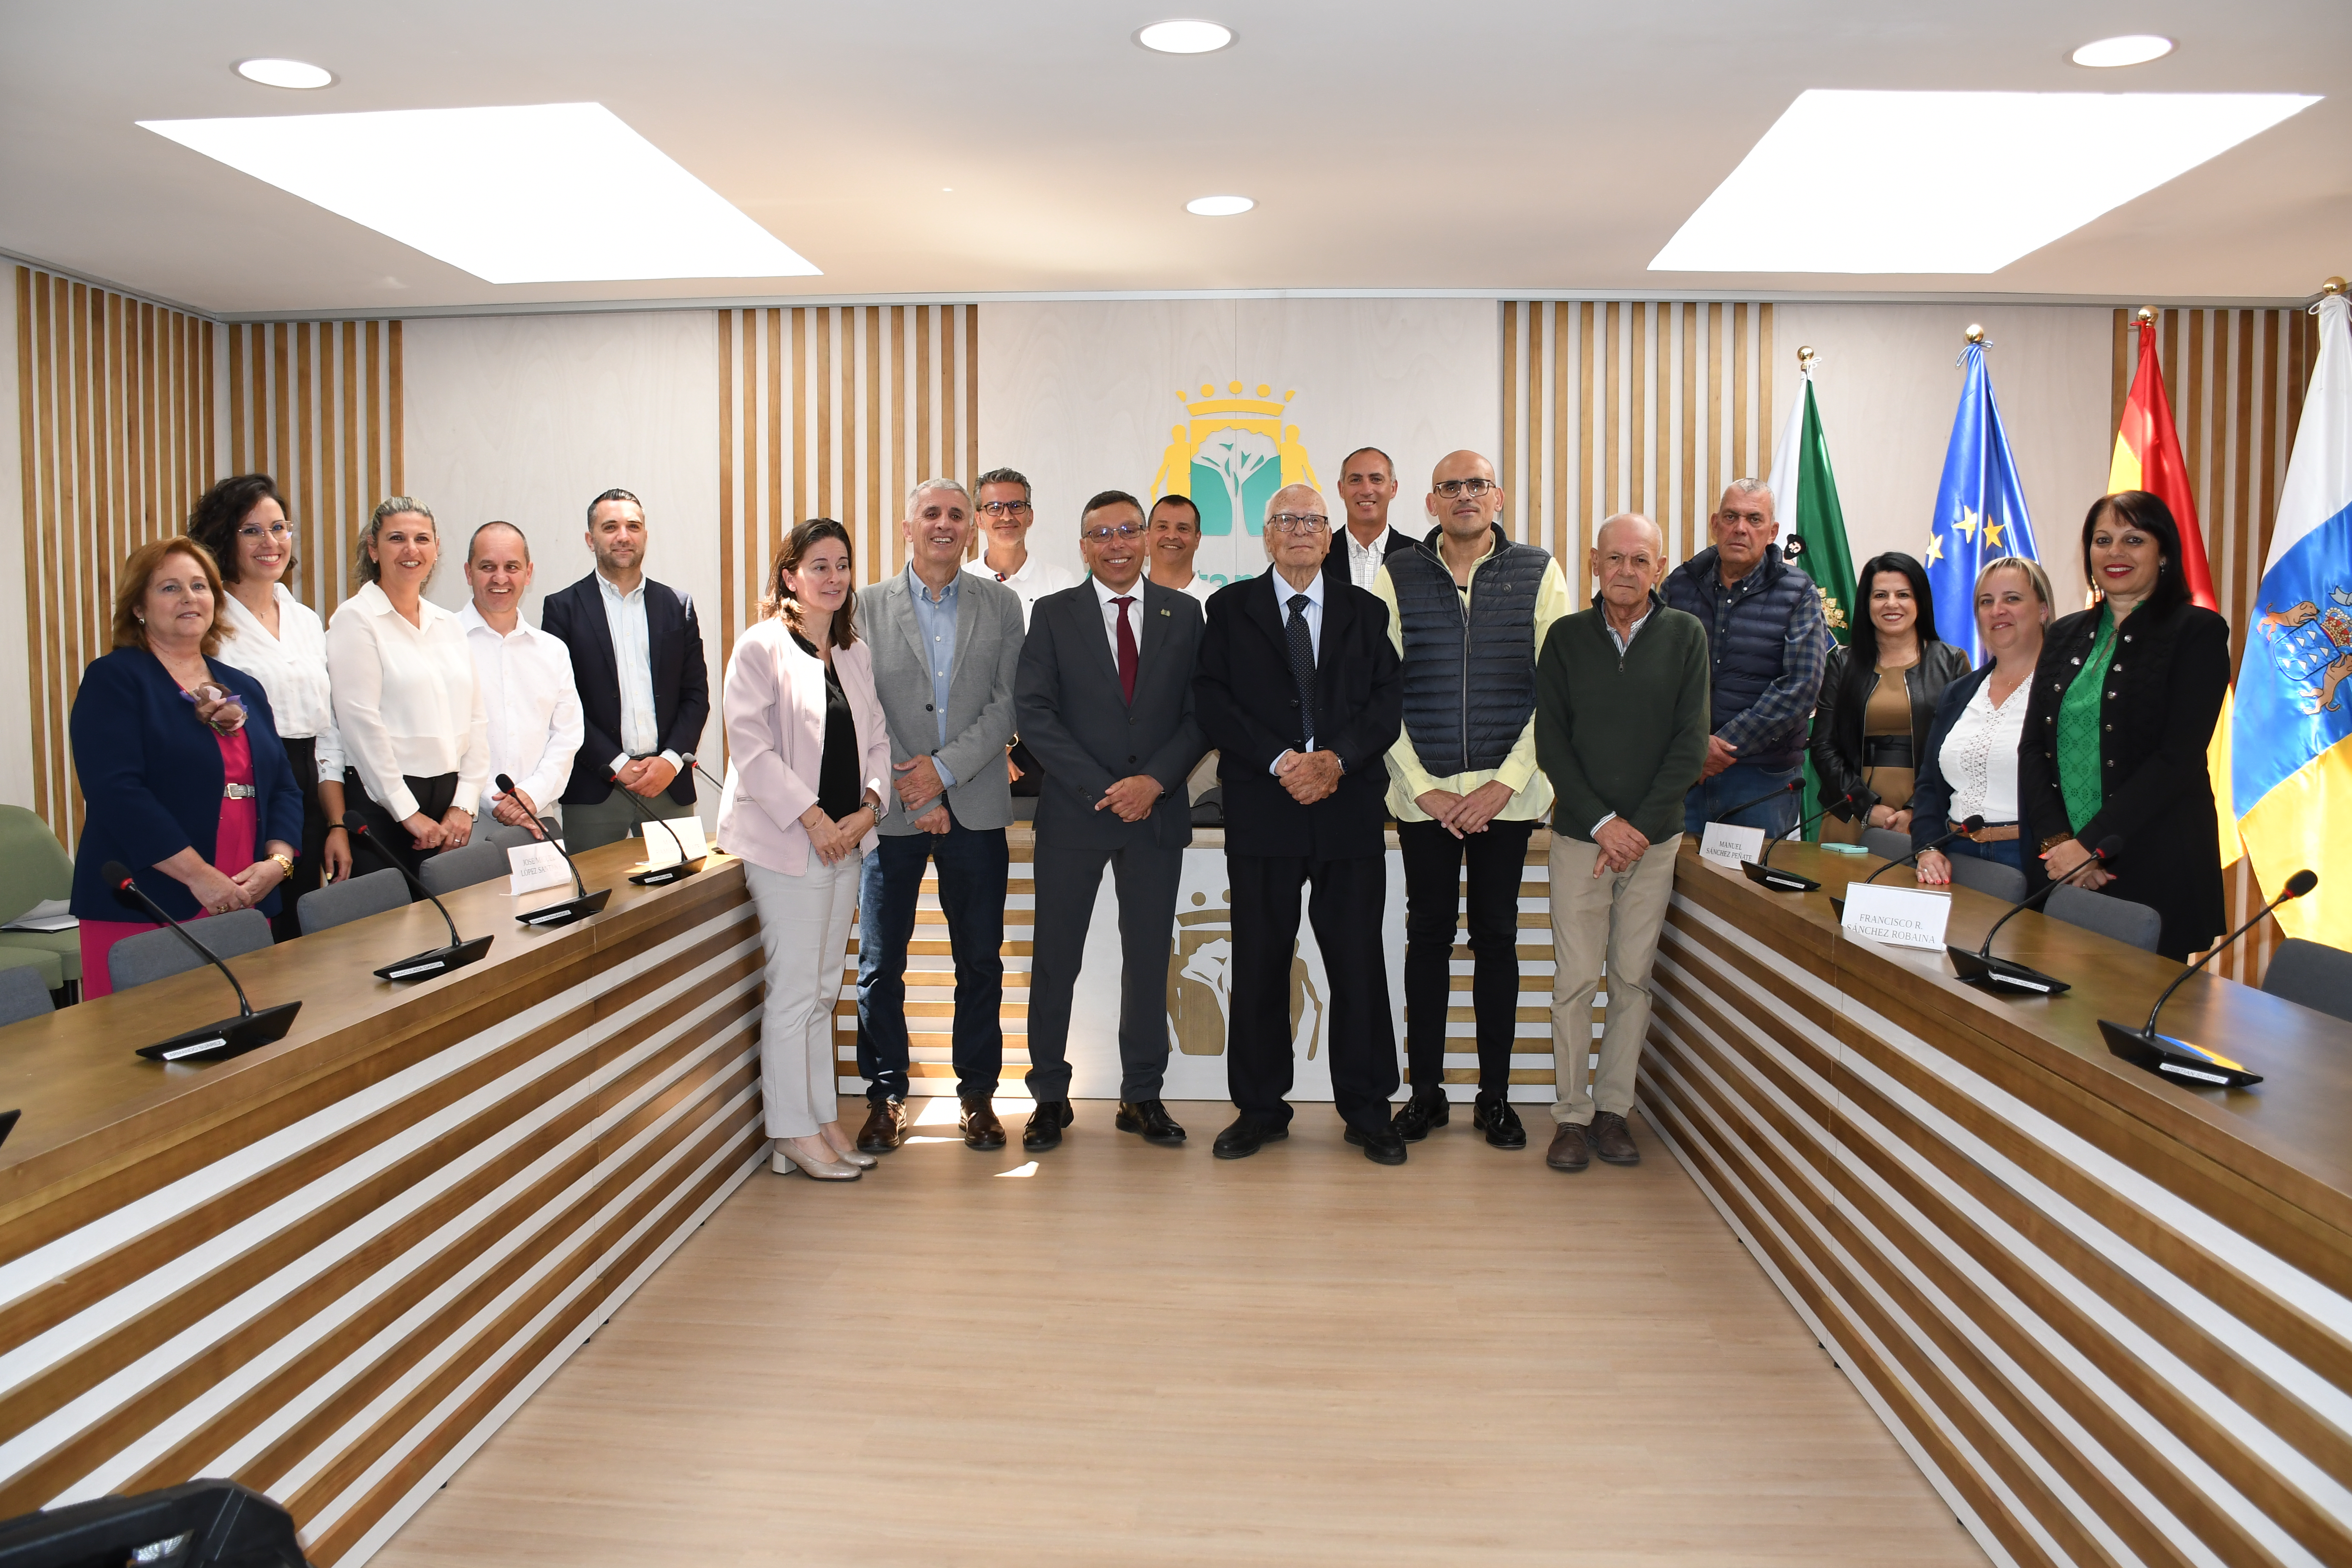 Valsequillo homenajea a los cuatro alcaldes de la Democracia